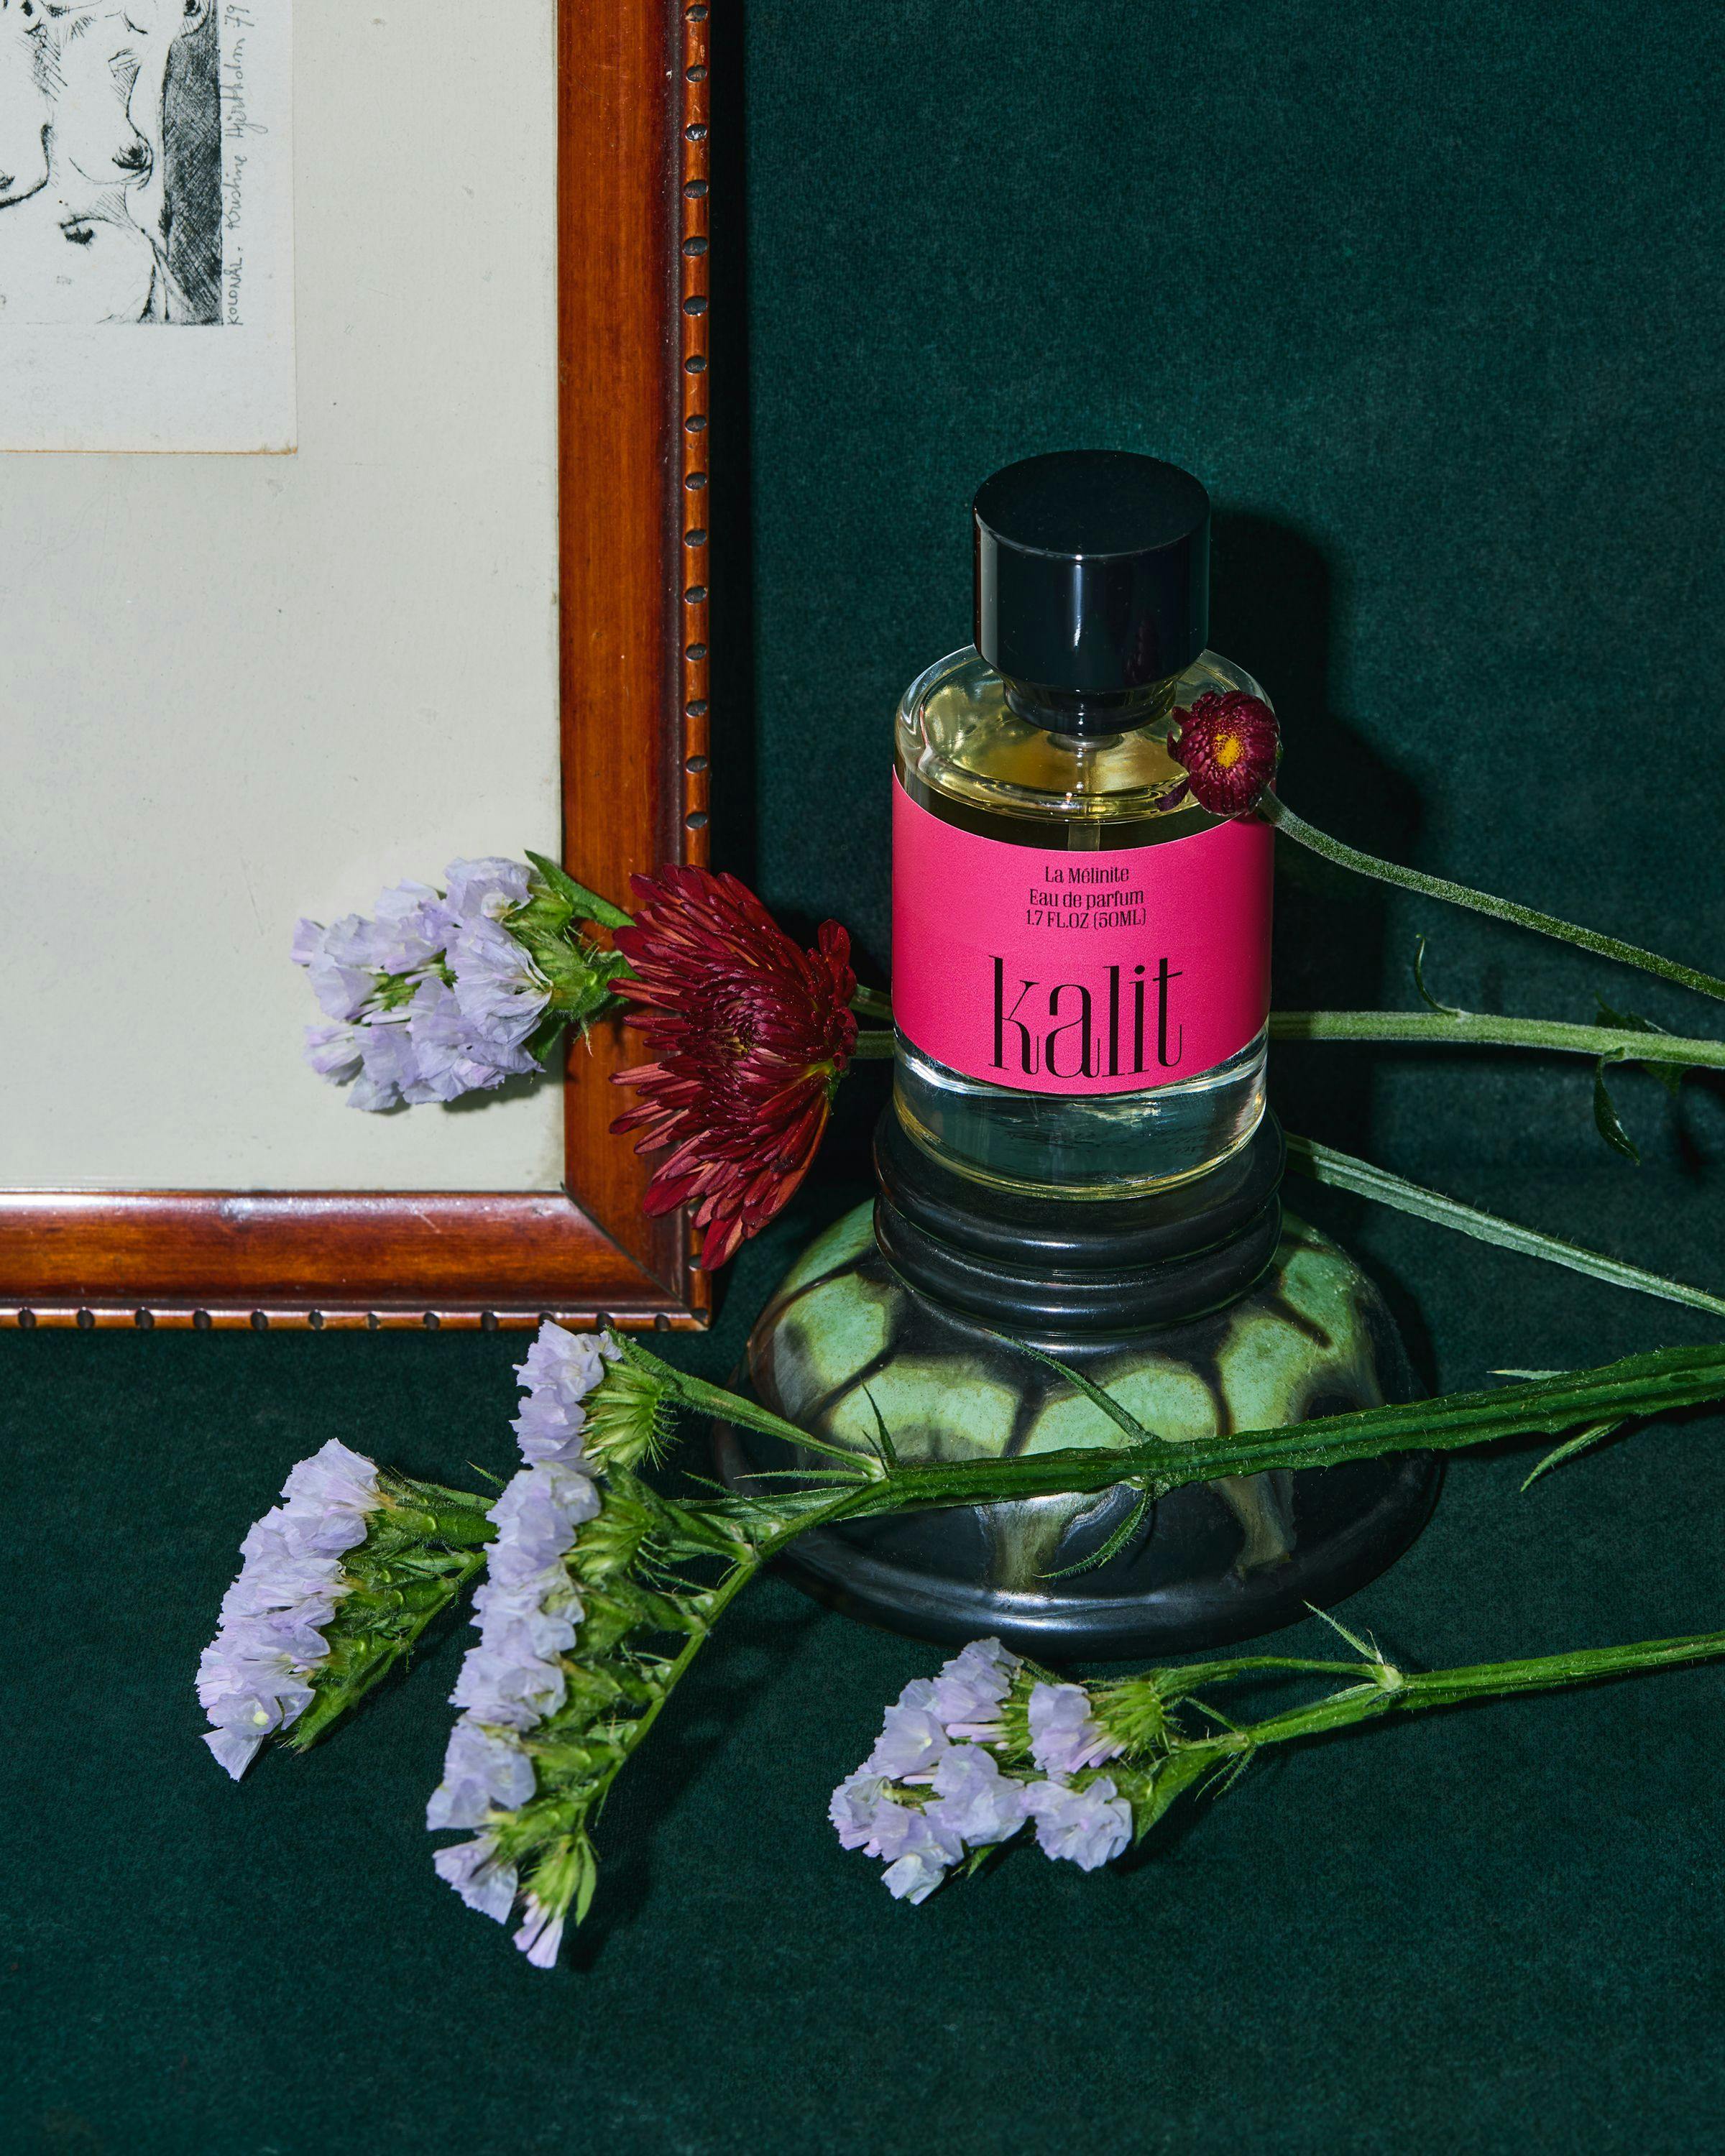 Bottle of perfume by Kalit, La Mélinite